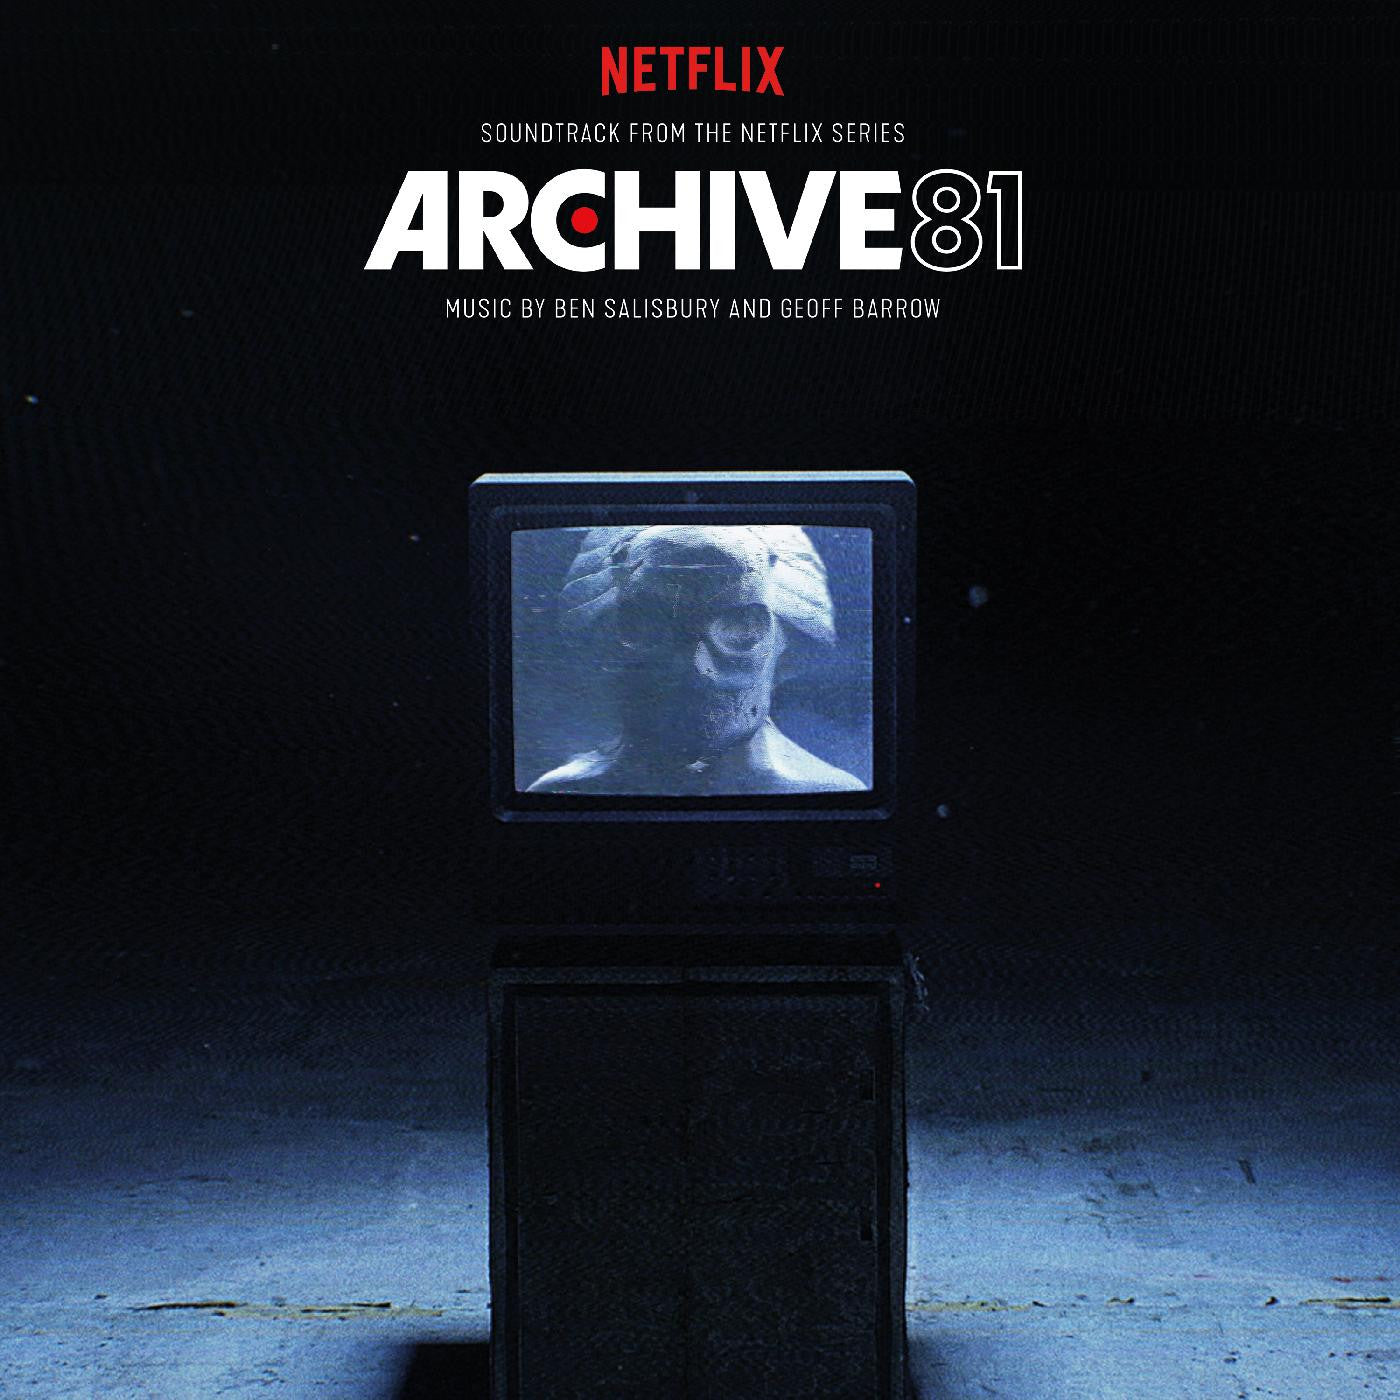 Ben Salisbury & Geoff Barrow - Archive 81 (Soundtrack From The Netflix Series)